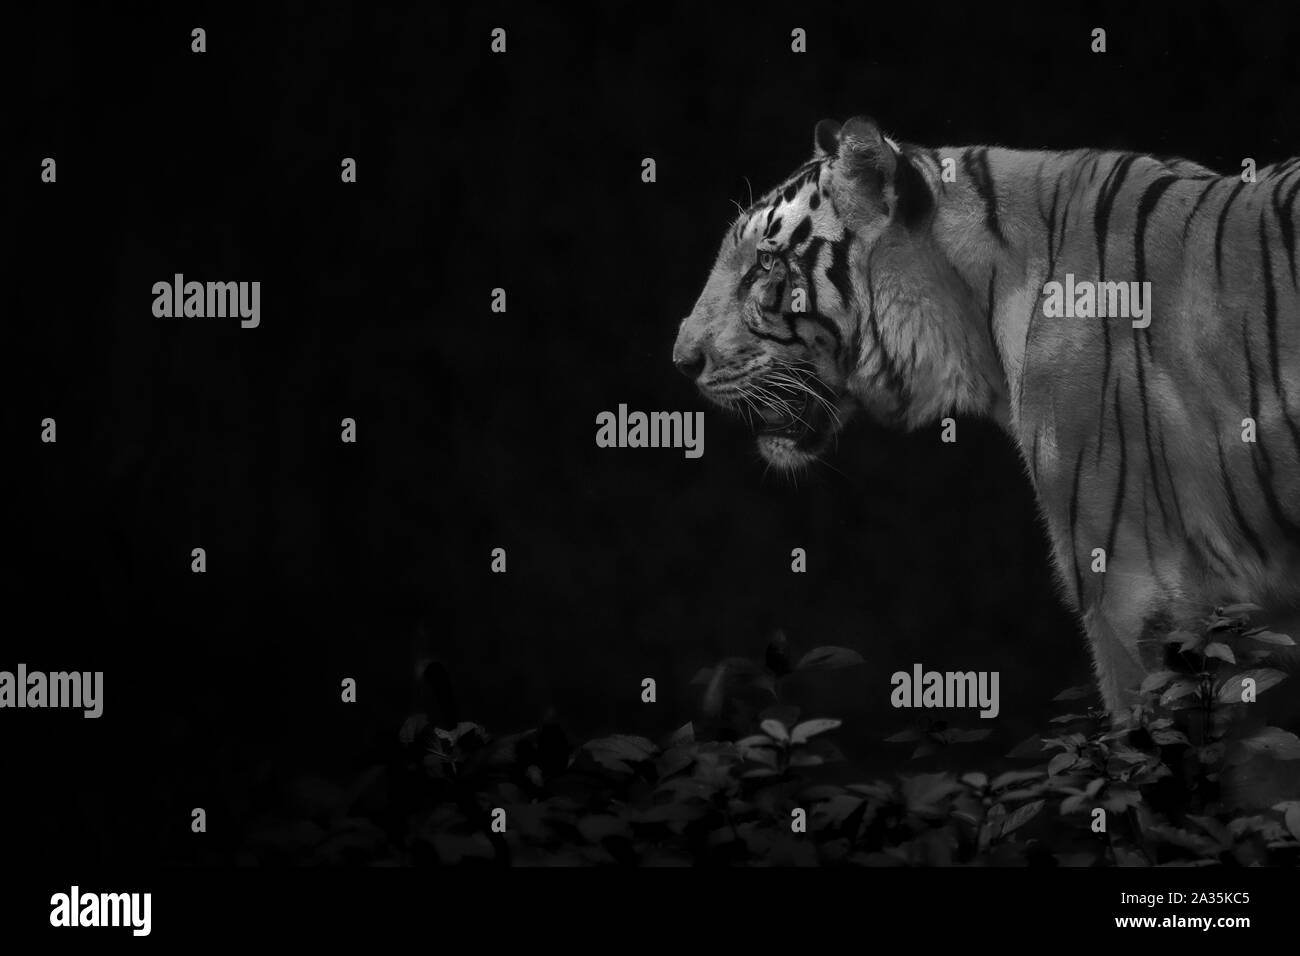 Cierre espectacular de la cabeza de un tigre macho perfil en baja luz clave en blanco y negro Foto de stock